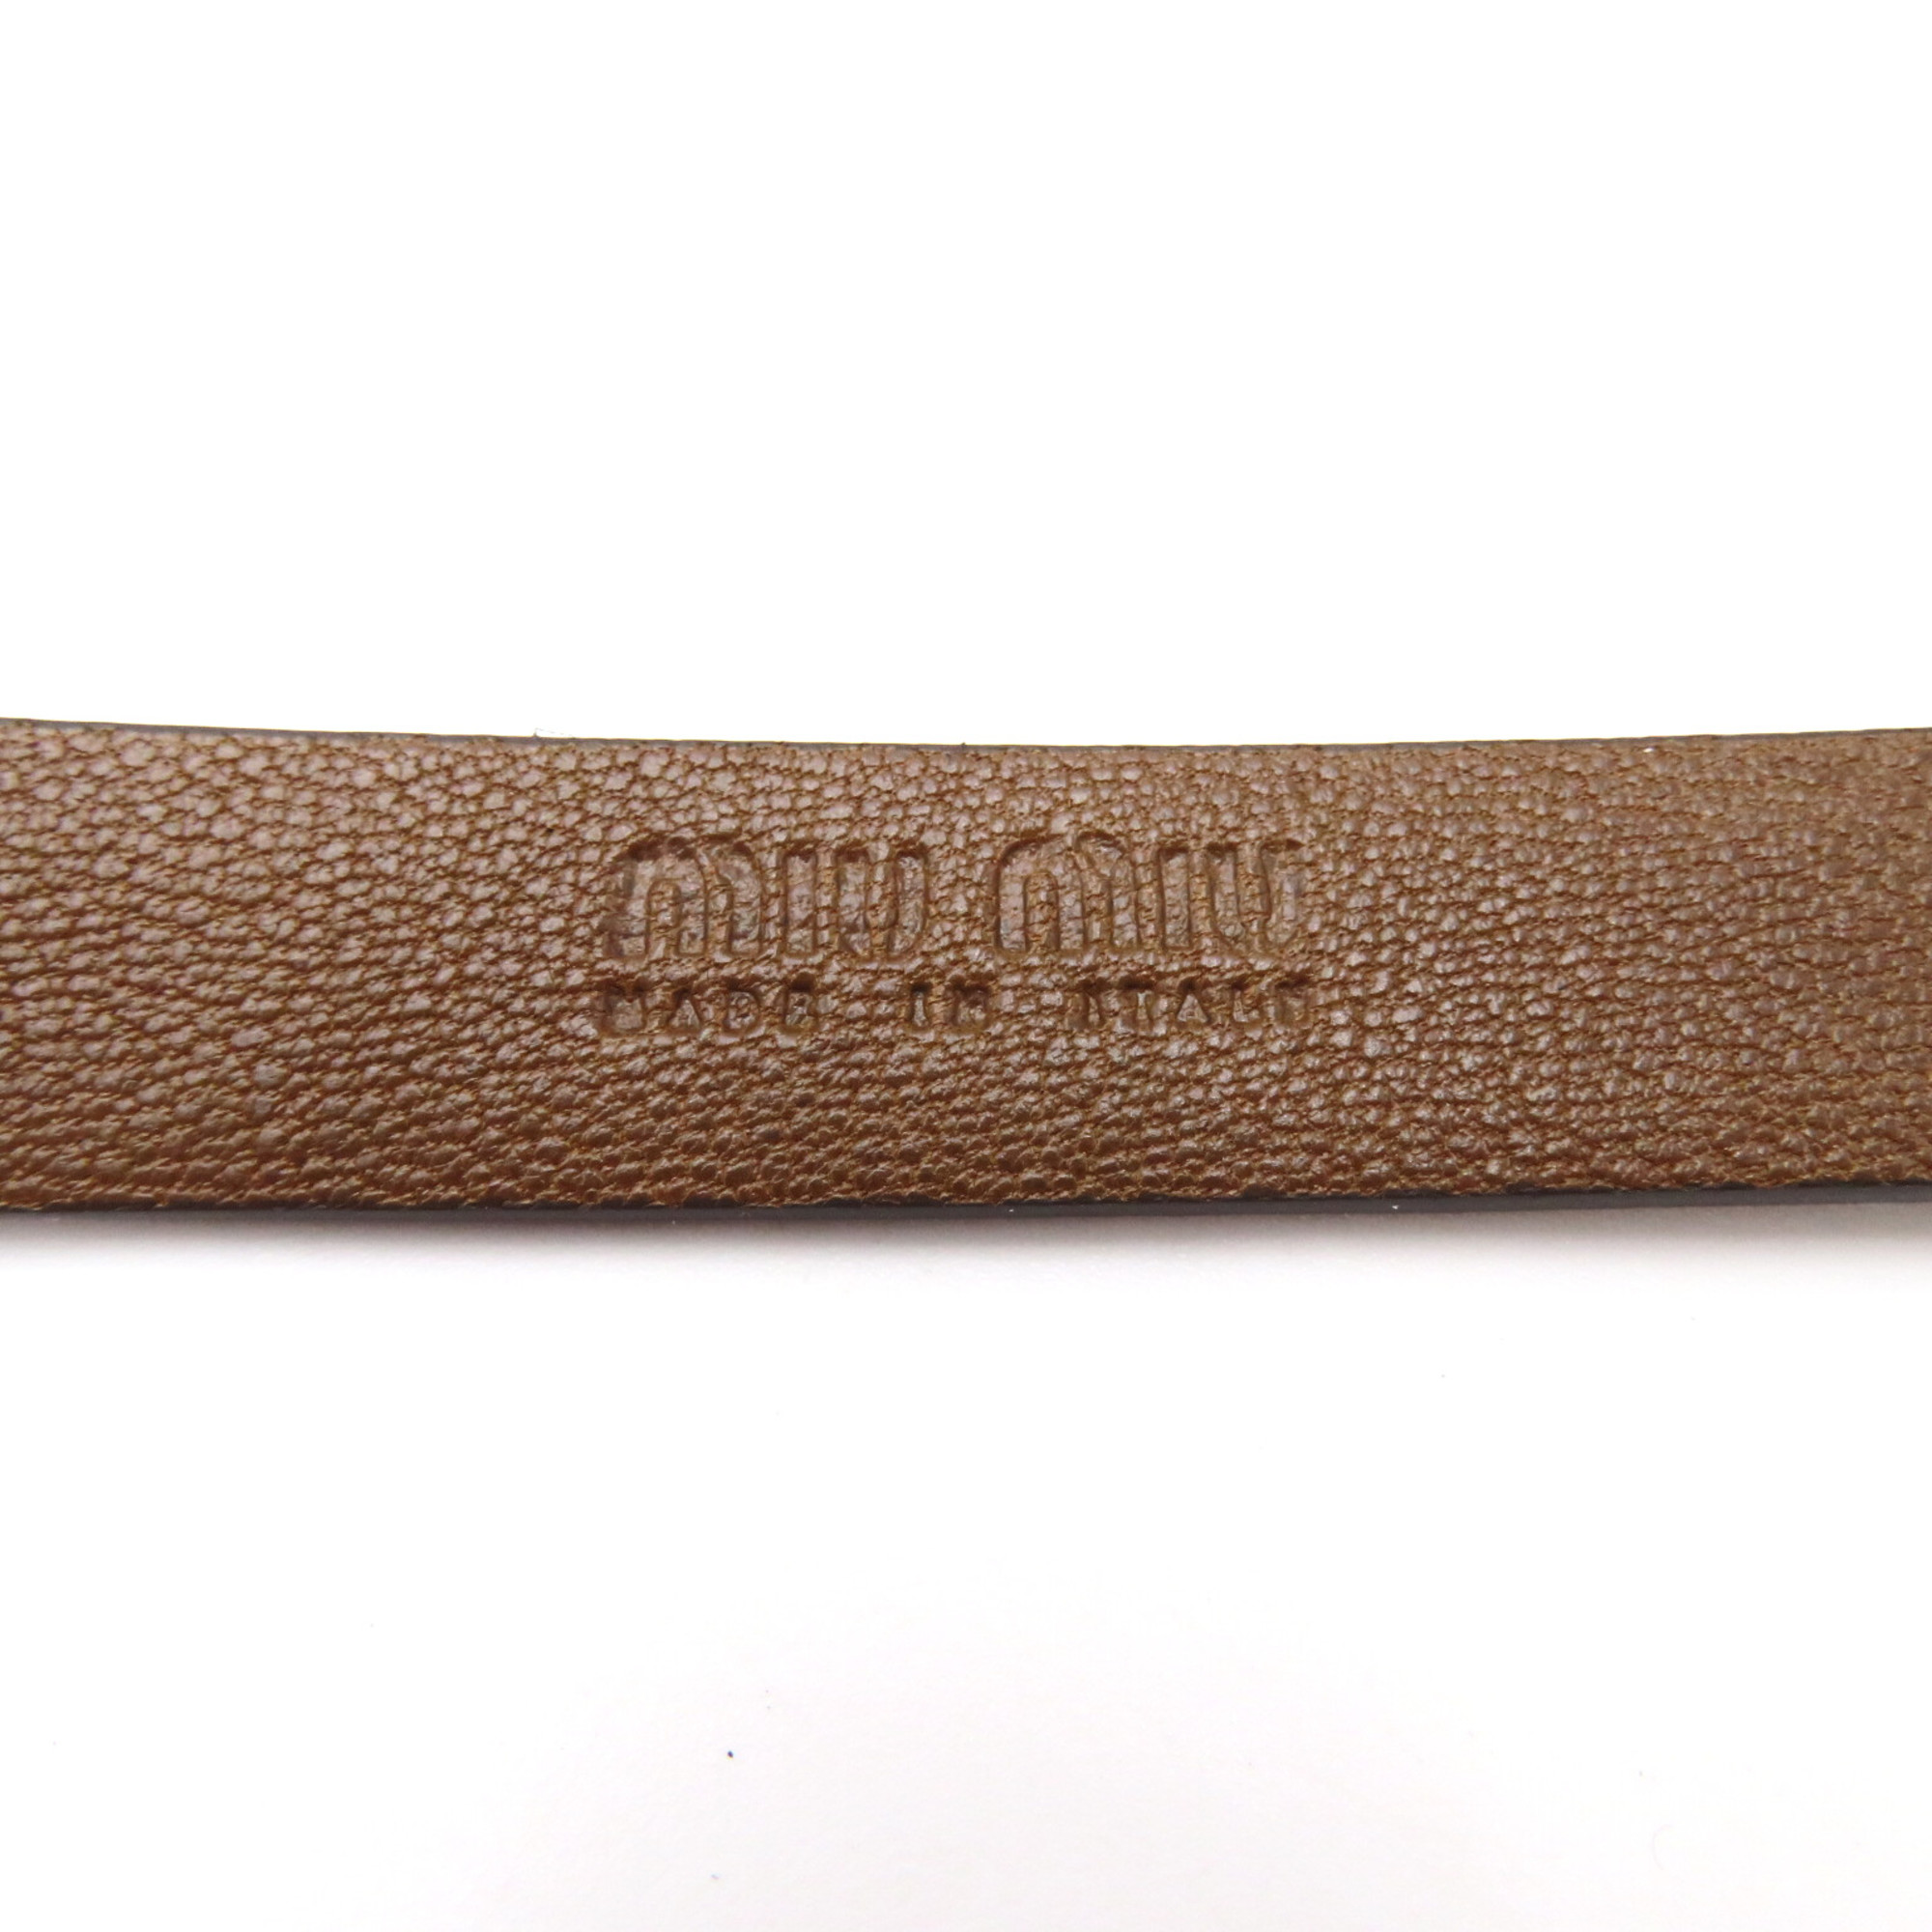 Miu Miu Leather belt Brown ROVERE Calfskin (cowhide) 5CC553EFXF031685